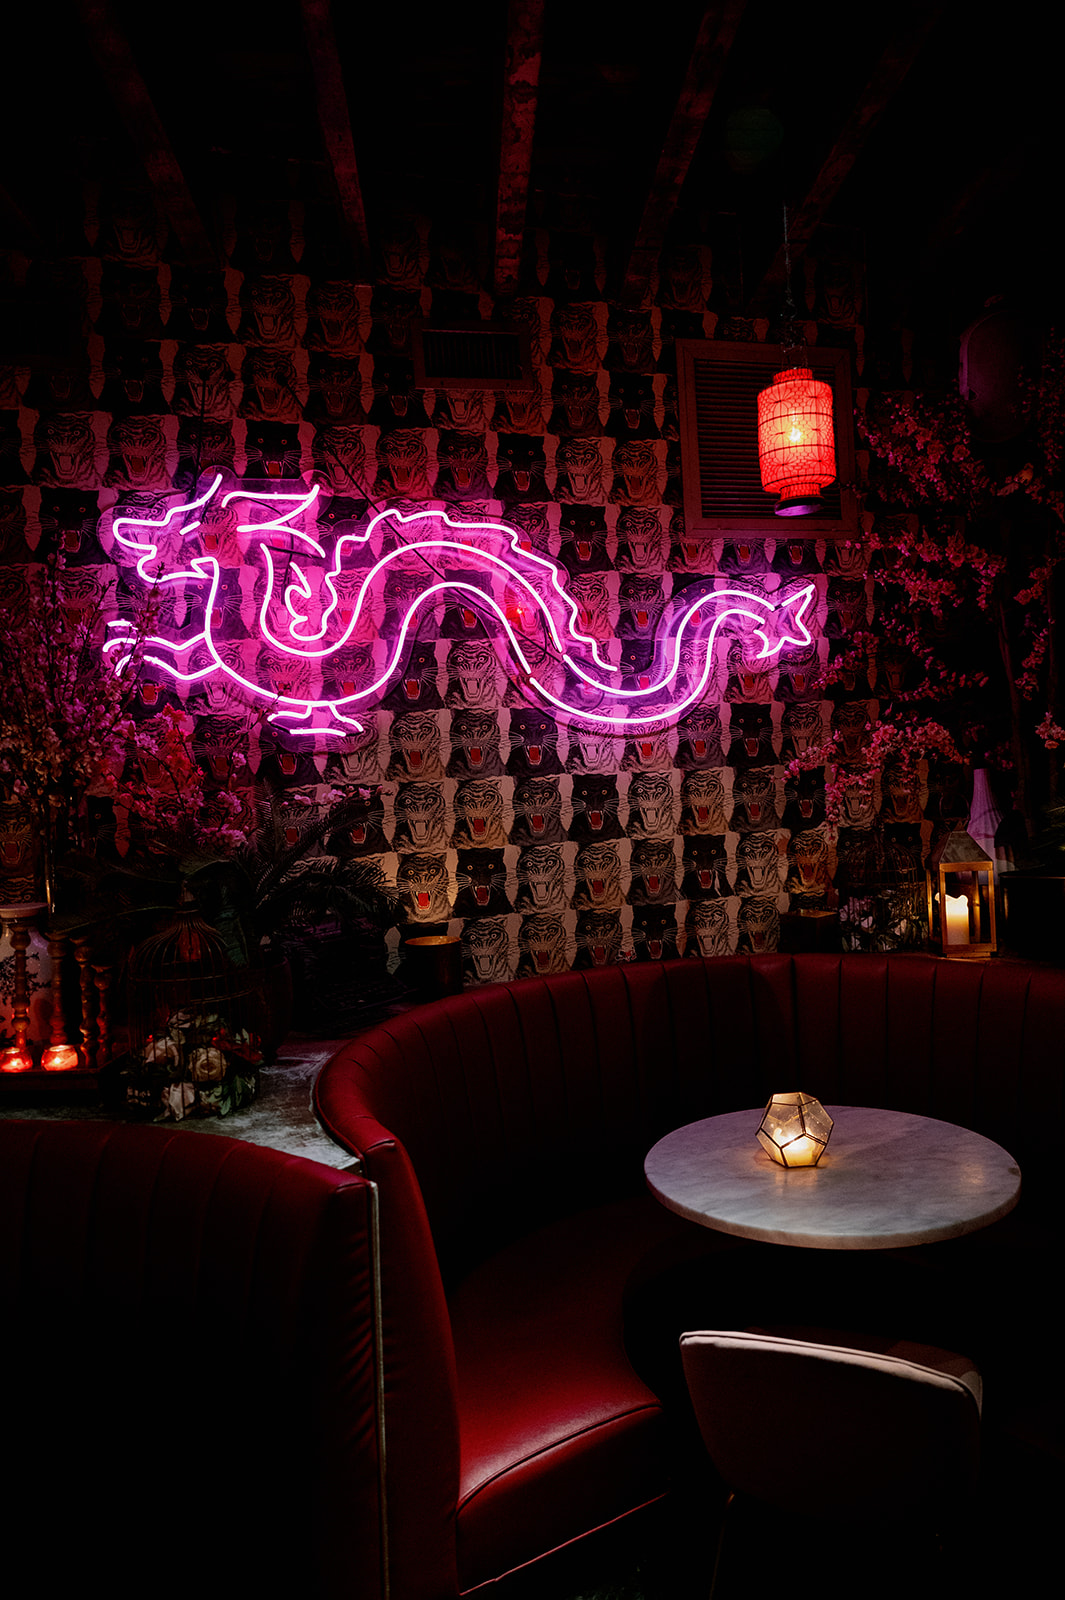 Purple neon dragon at Peachy's bar.  